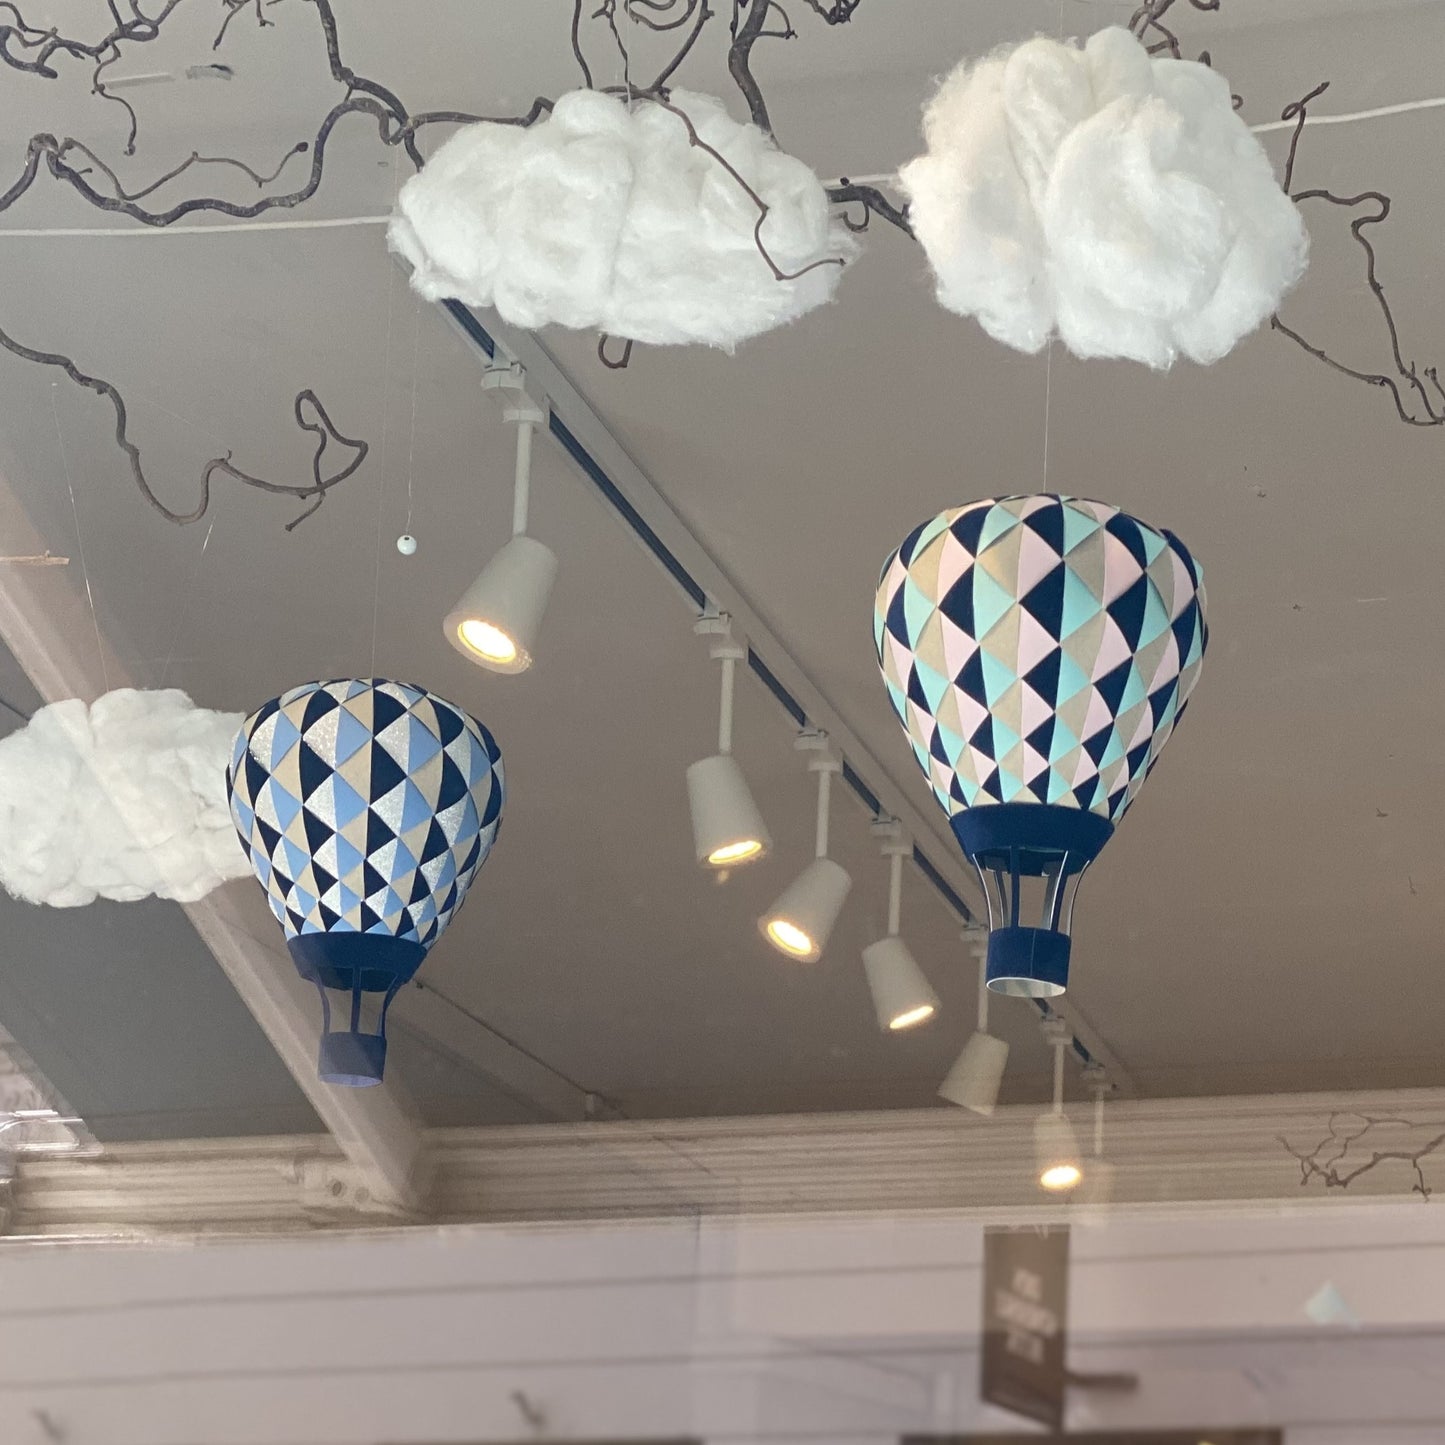 PaperMatrix - Luftballon, Mørk blå/mint/lyserød